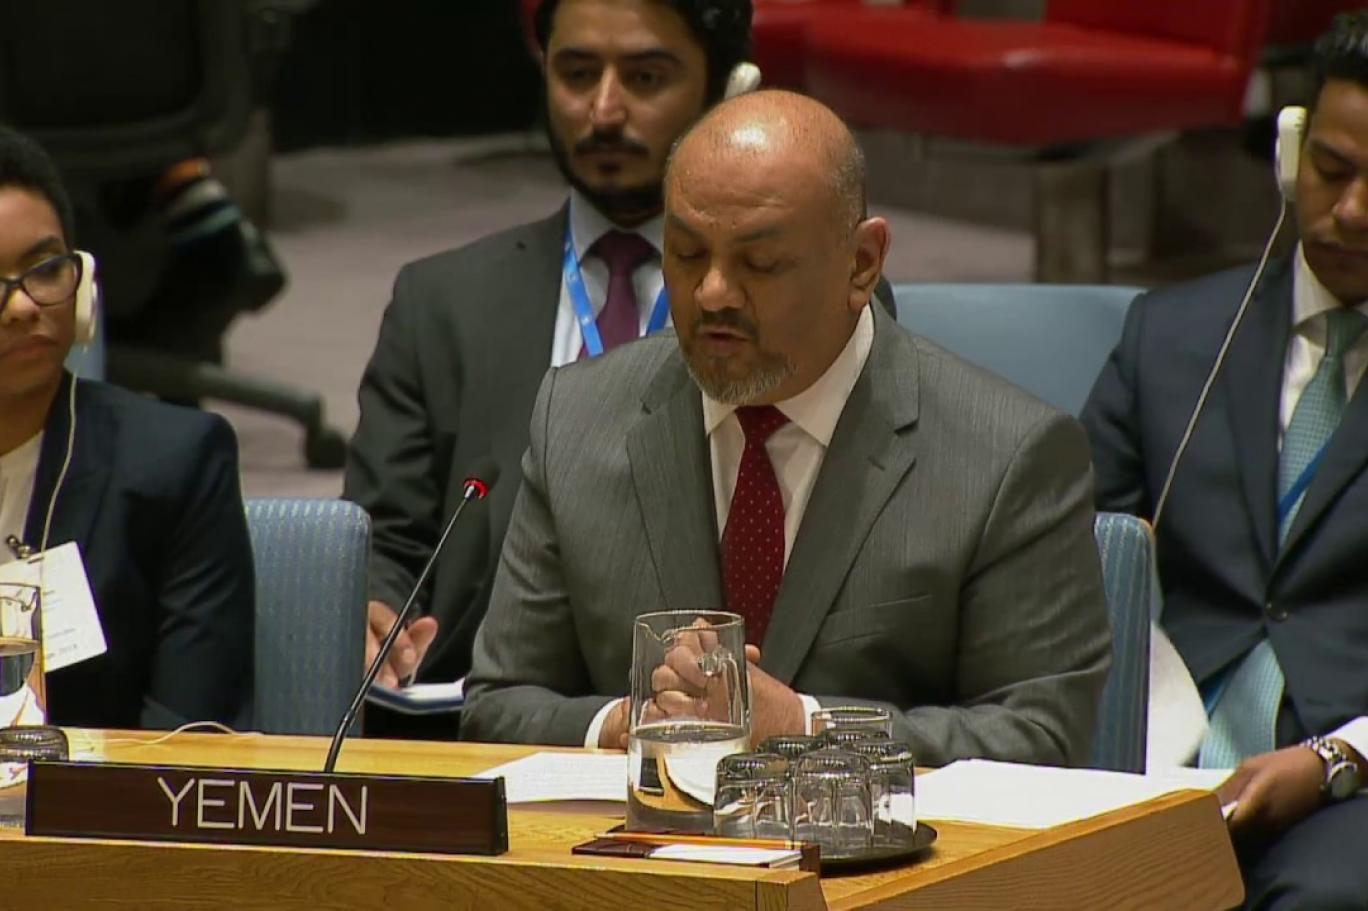 وزير الخارجية اليمني لـ "إندبندنت عربية": مرَّ شهران على اتفاق السويد دون تنفيذ واستقدام مقاتلين جدد لا يشير لنية الحوثيين تنفيذه